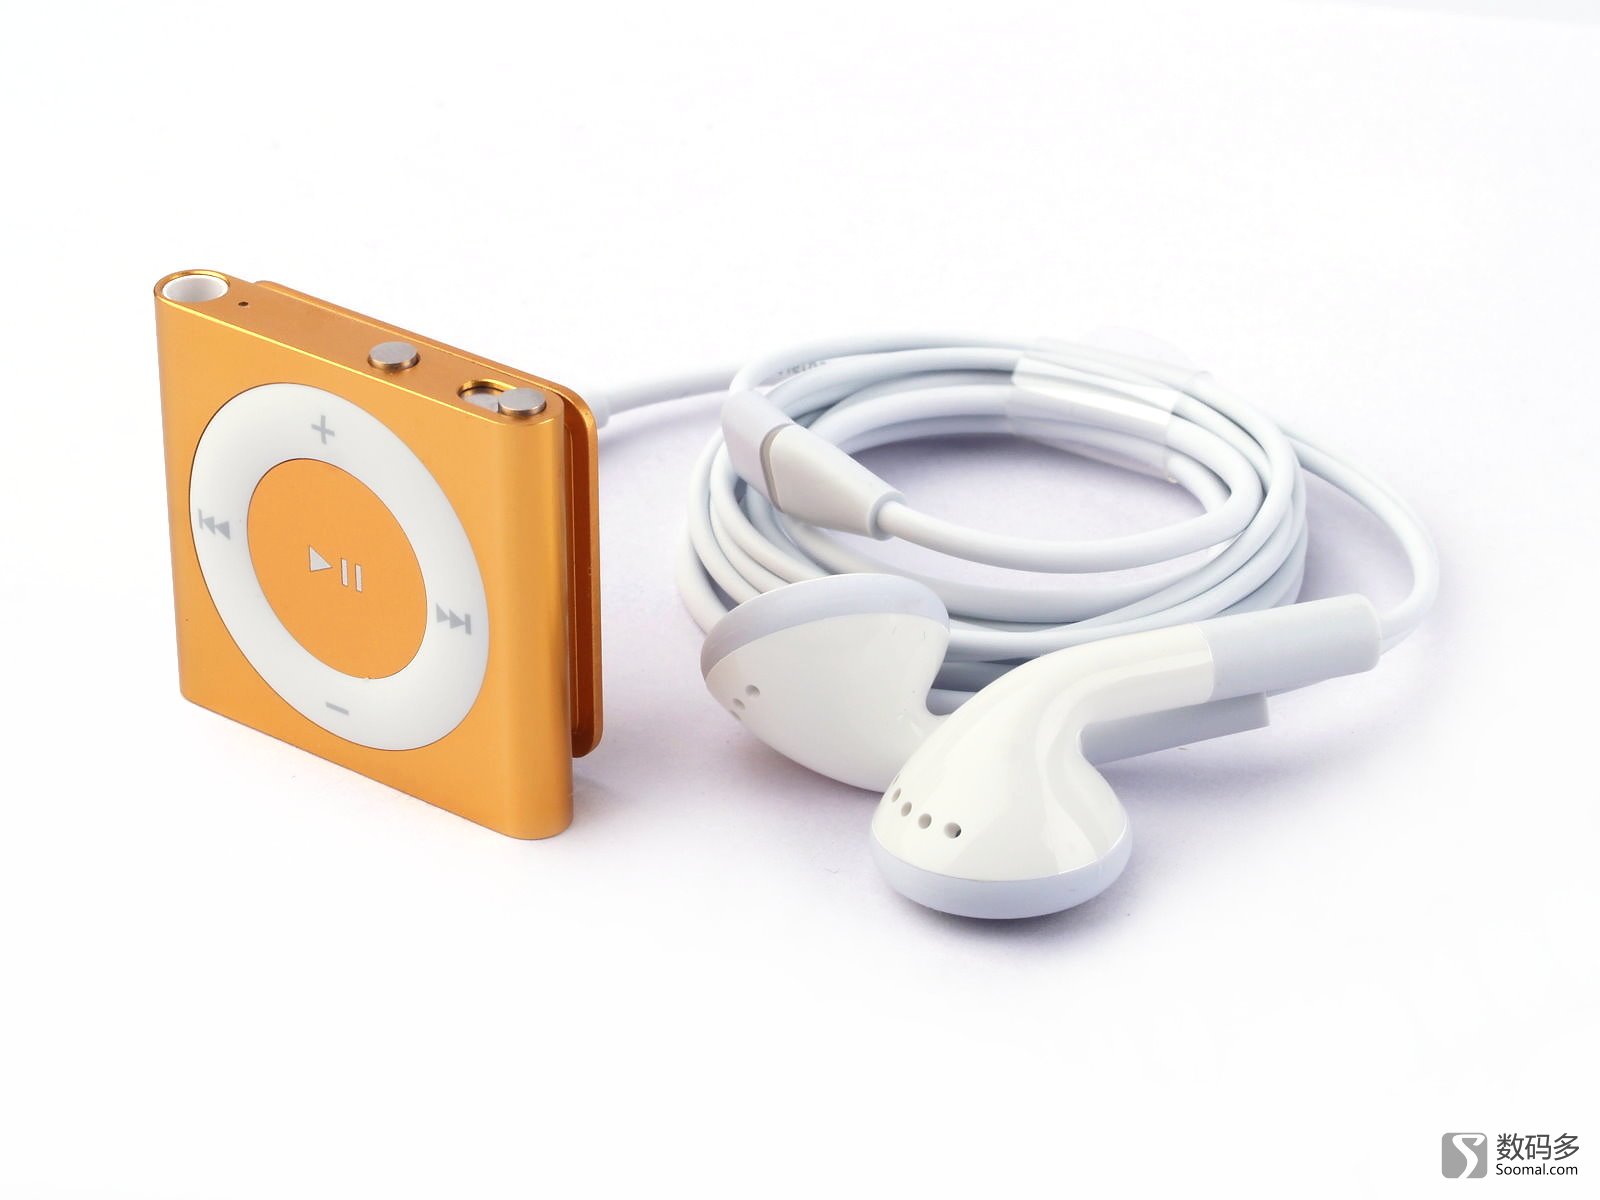 标题apple 苹果 ipod shuffle   便携式播放器-与原装耳机 图片说明